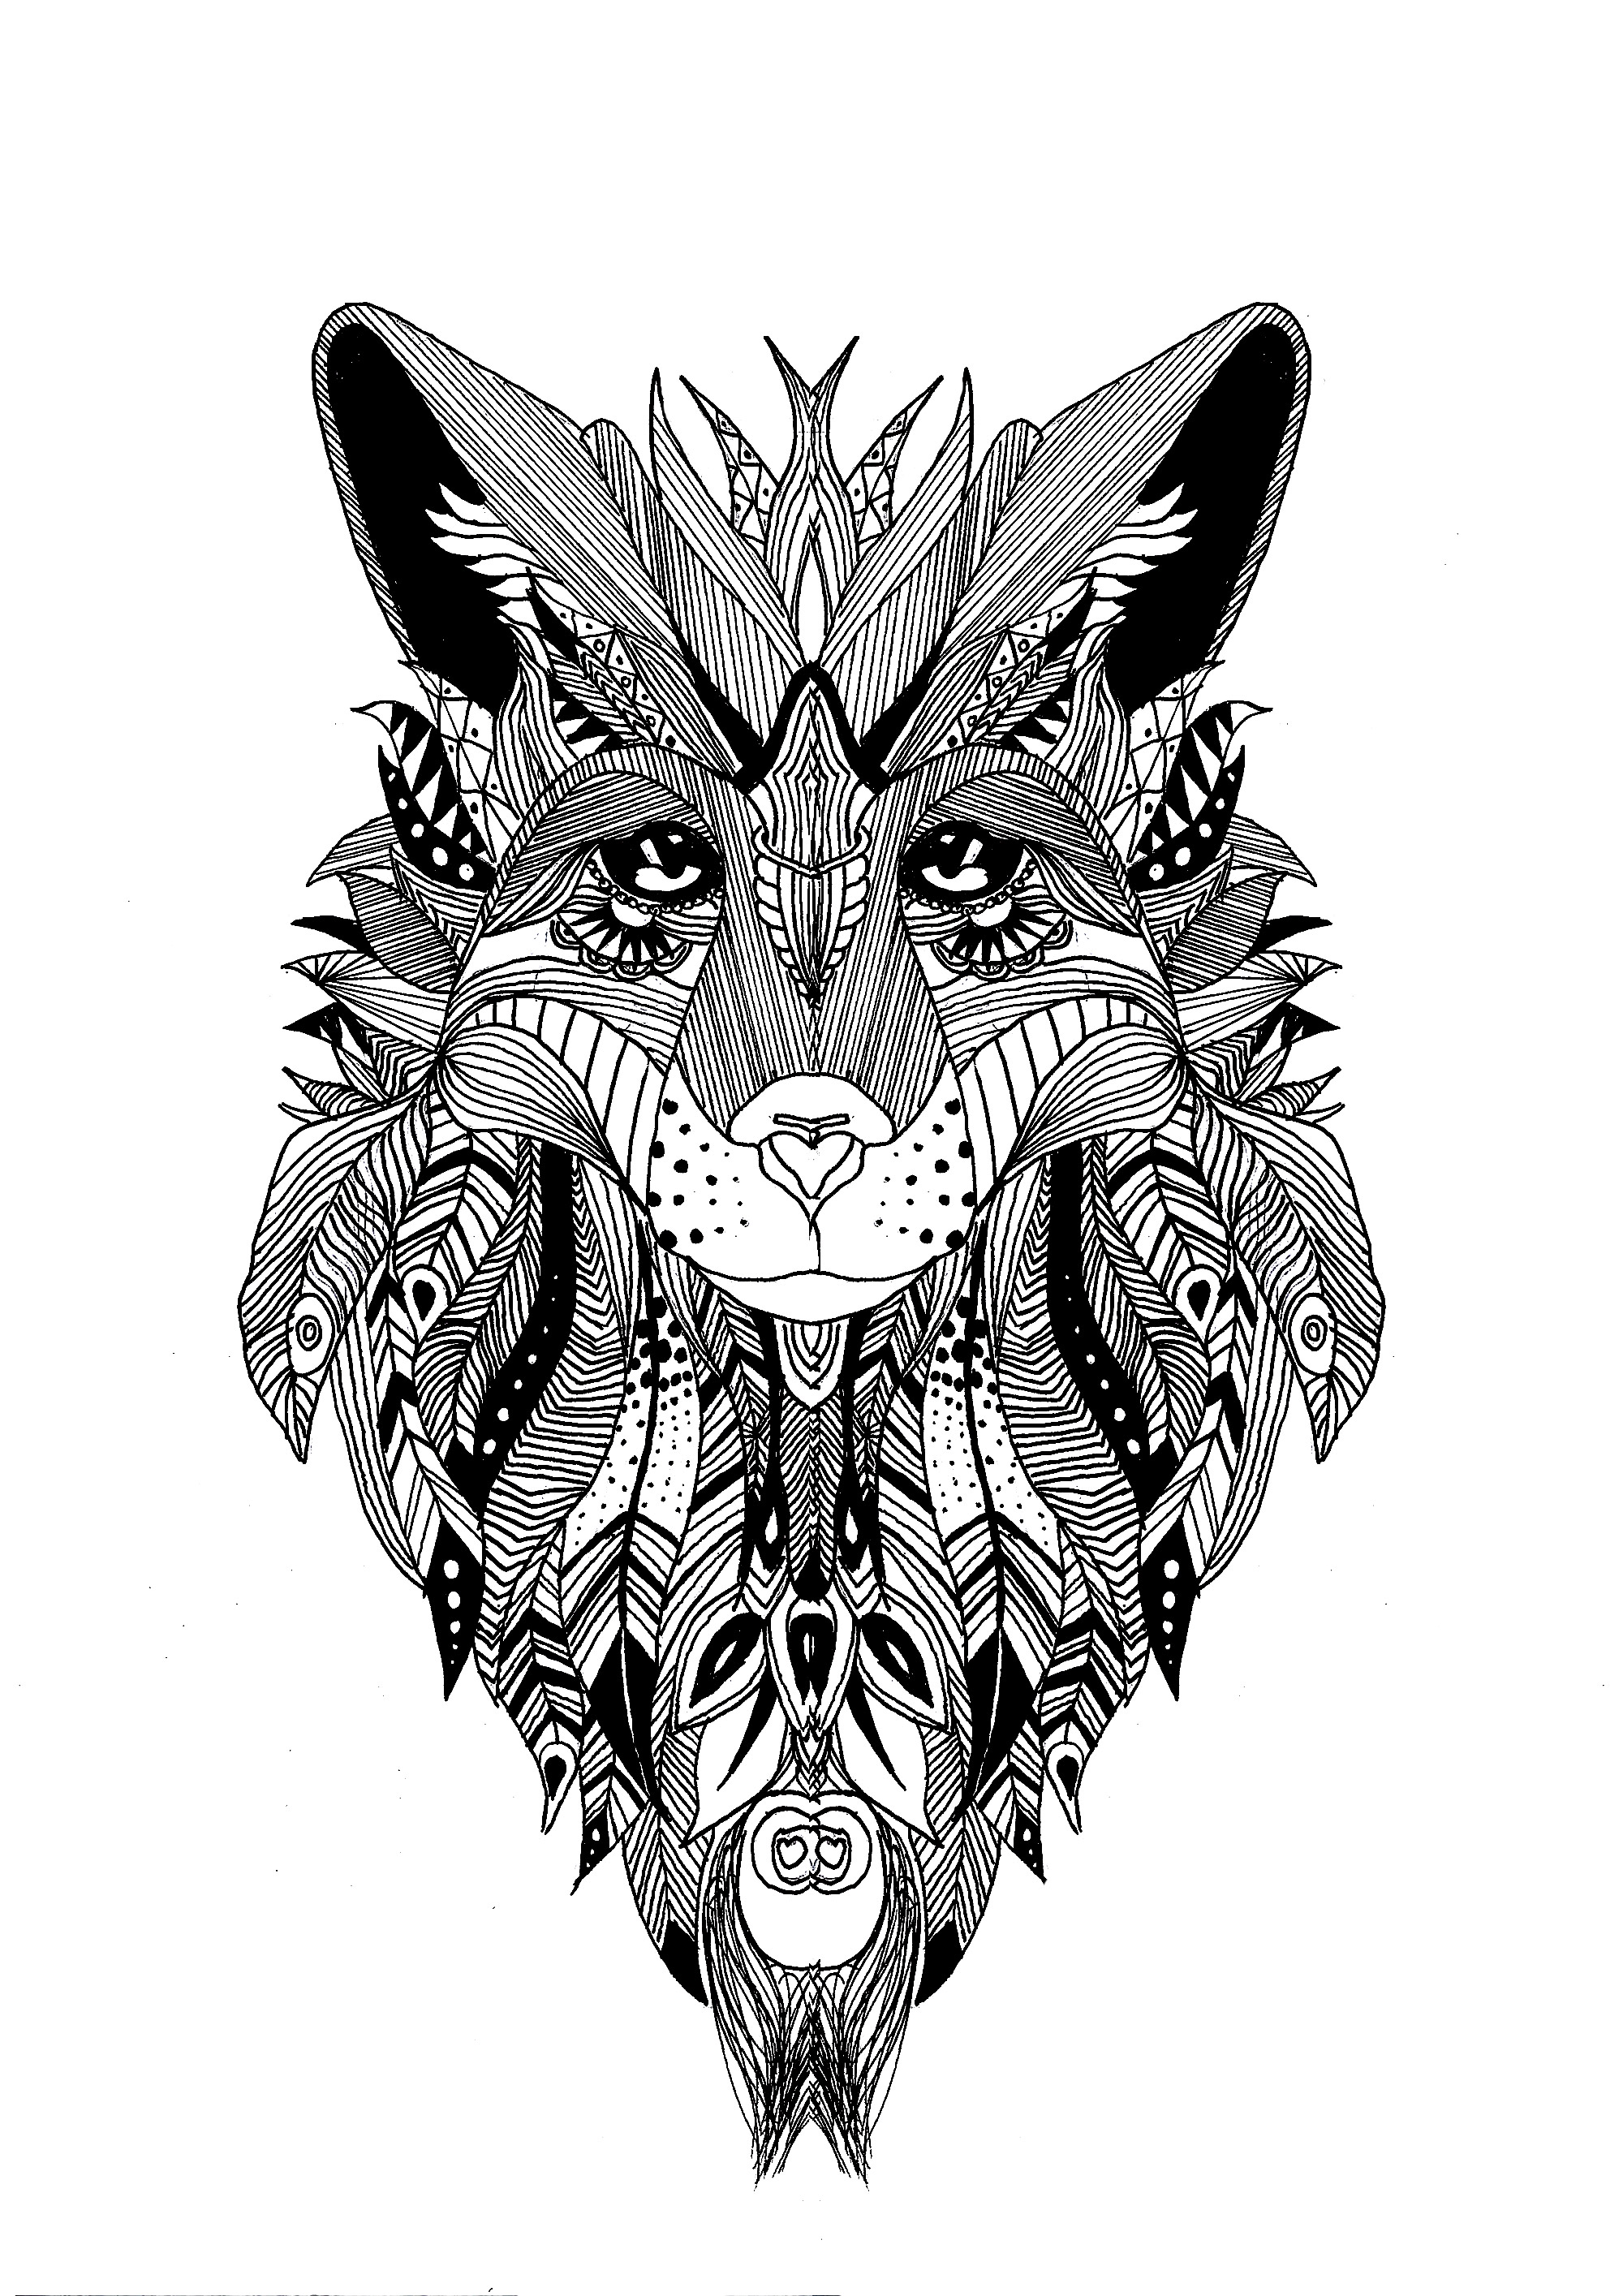 Coloriage d'un loup dessinées avec le style de zentangle et quelque plumes dans sa fourrure, Artiste : Krissy